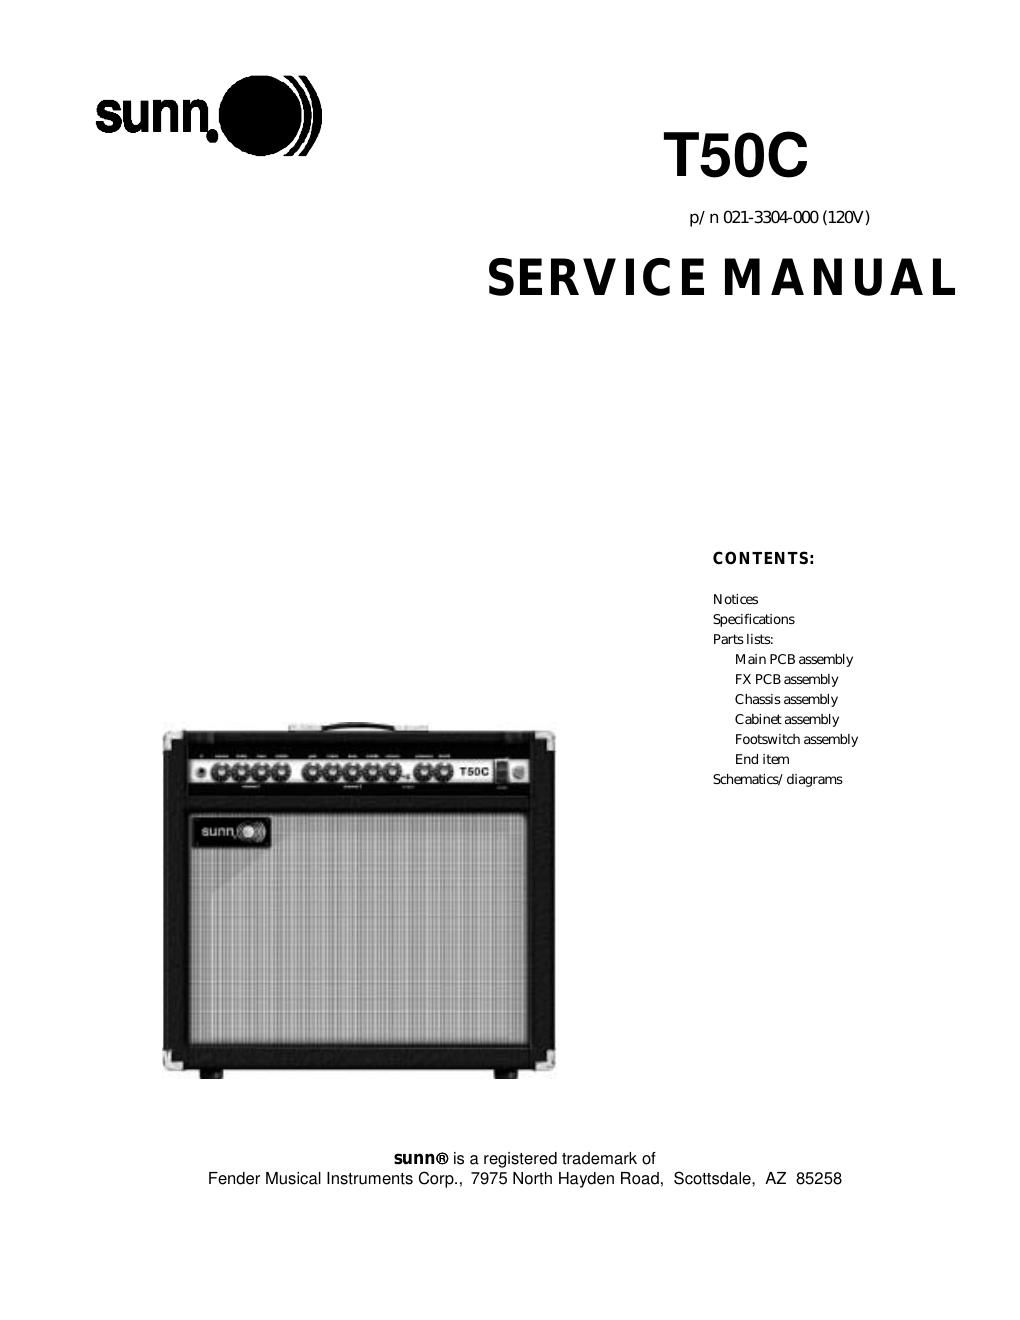 sunn t50c service manual